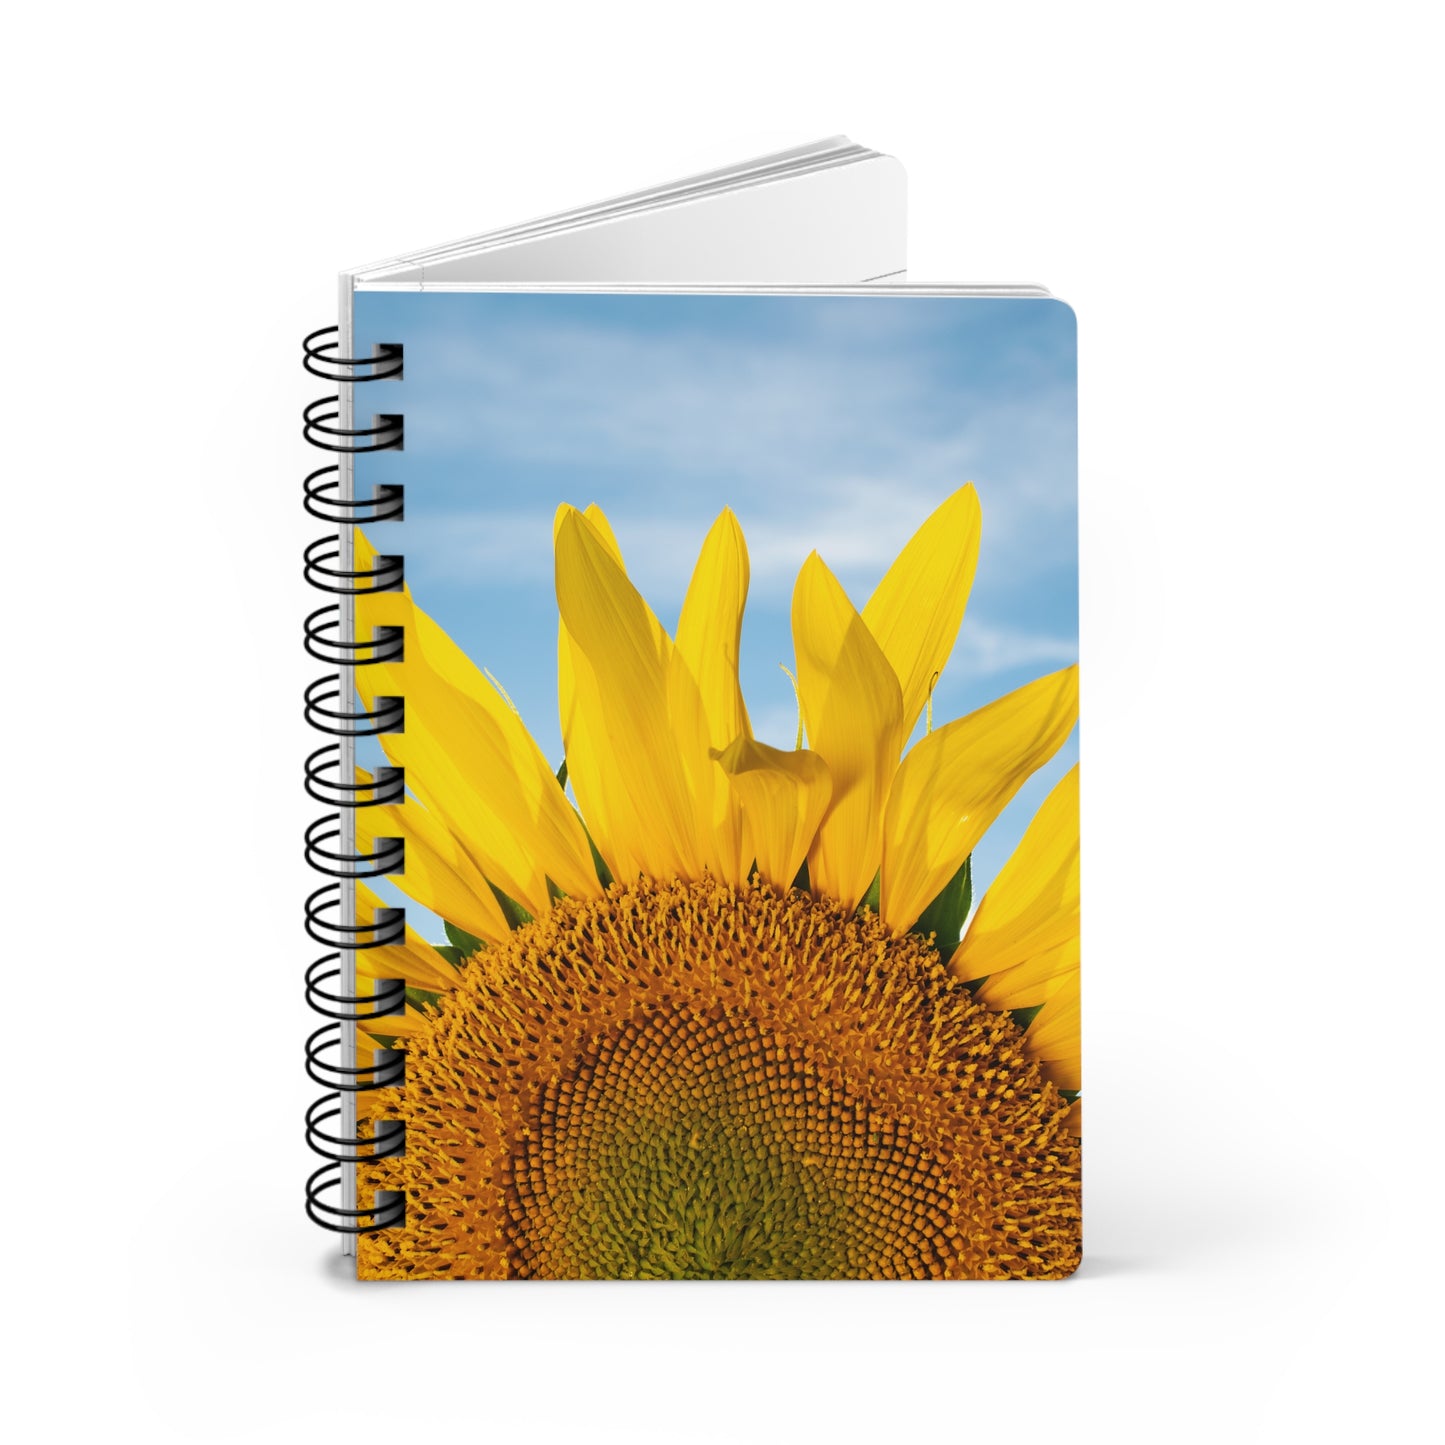 Sunflowers 05 - Spiral Bound Journal One Size